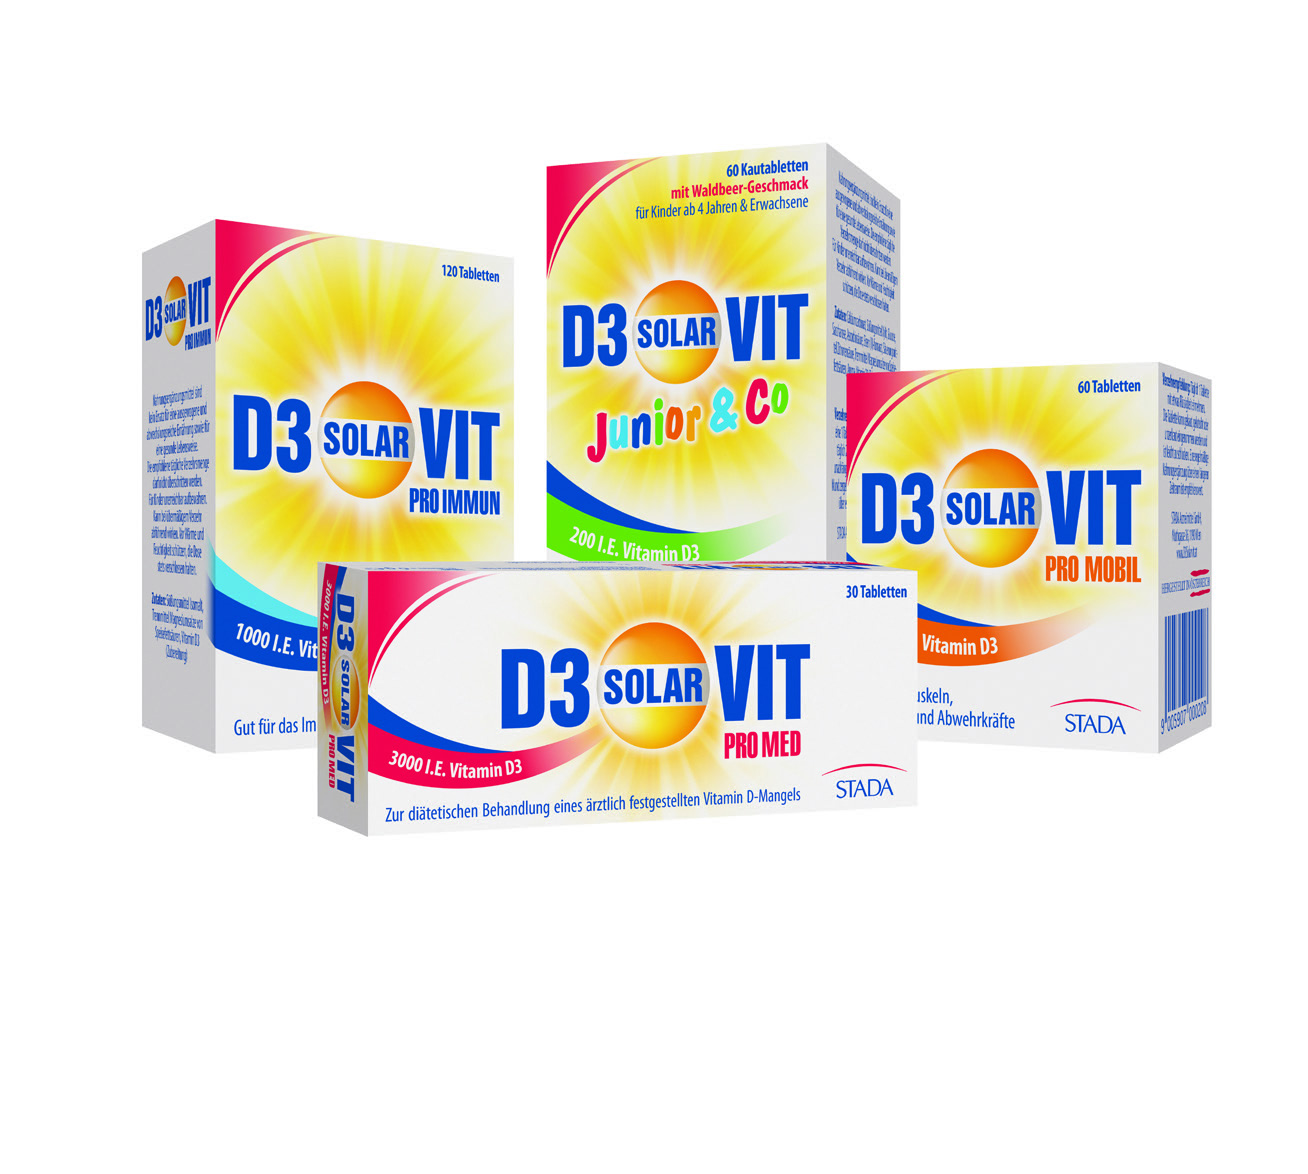 D3 Solarvit ist exklusiv in Apotheken erhältlich.